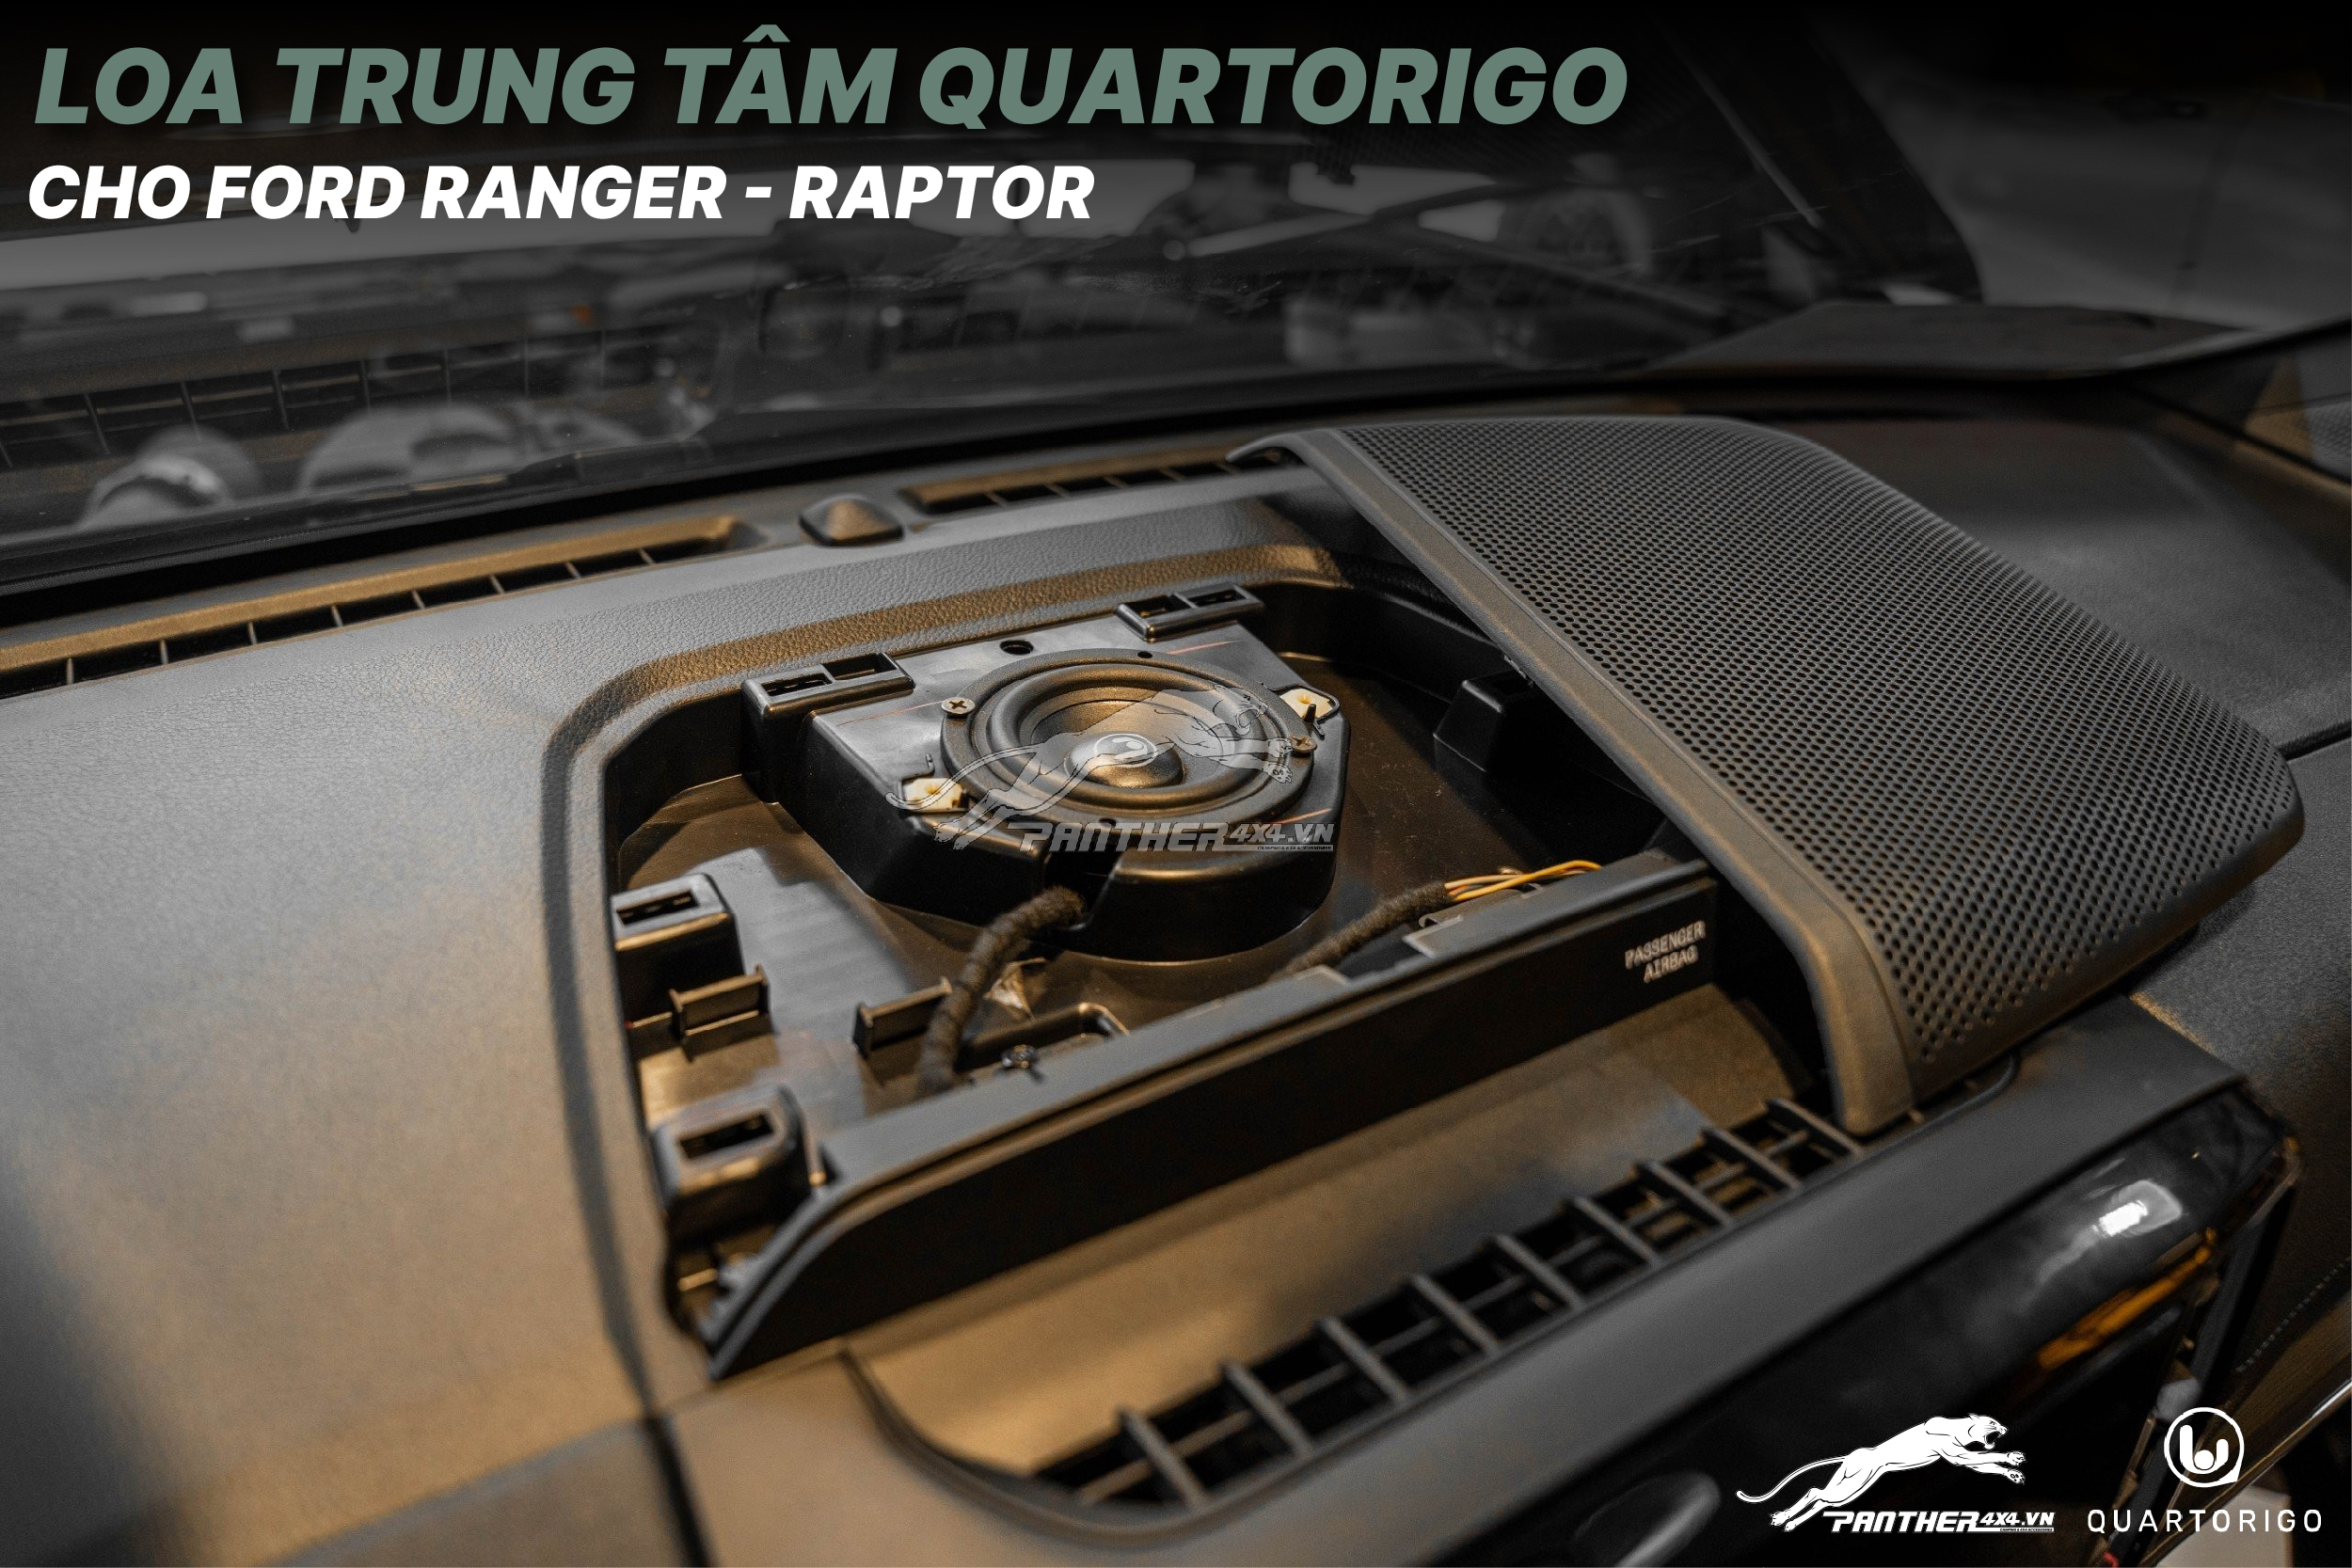 Loa trung tâm Quartorigo cho Ford Ranger, Raptor